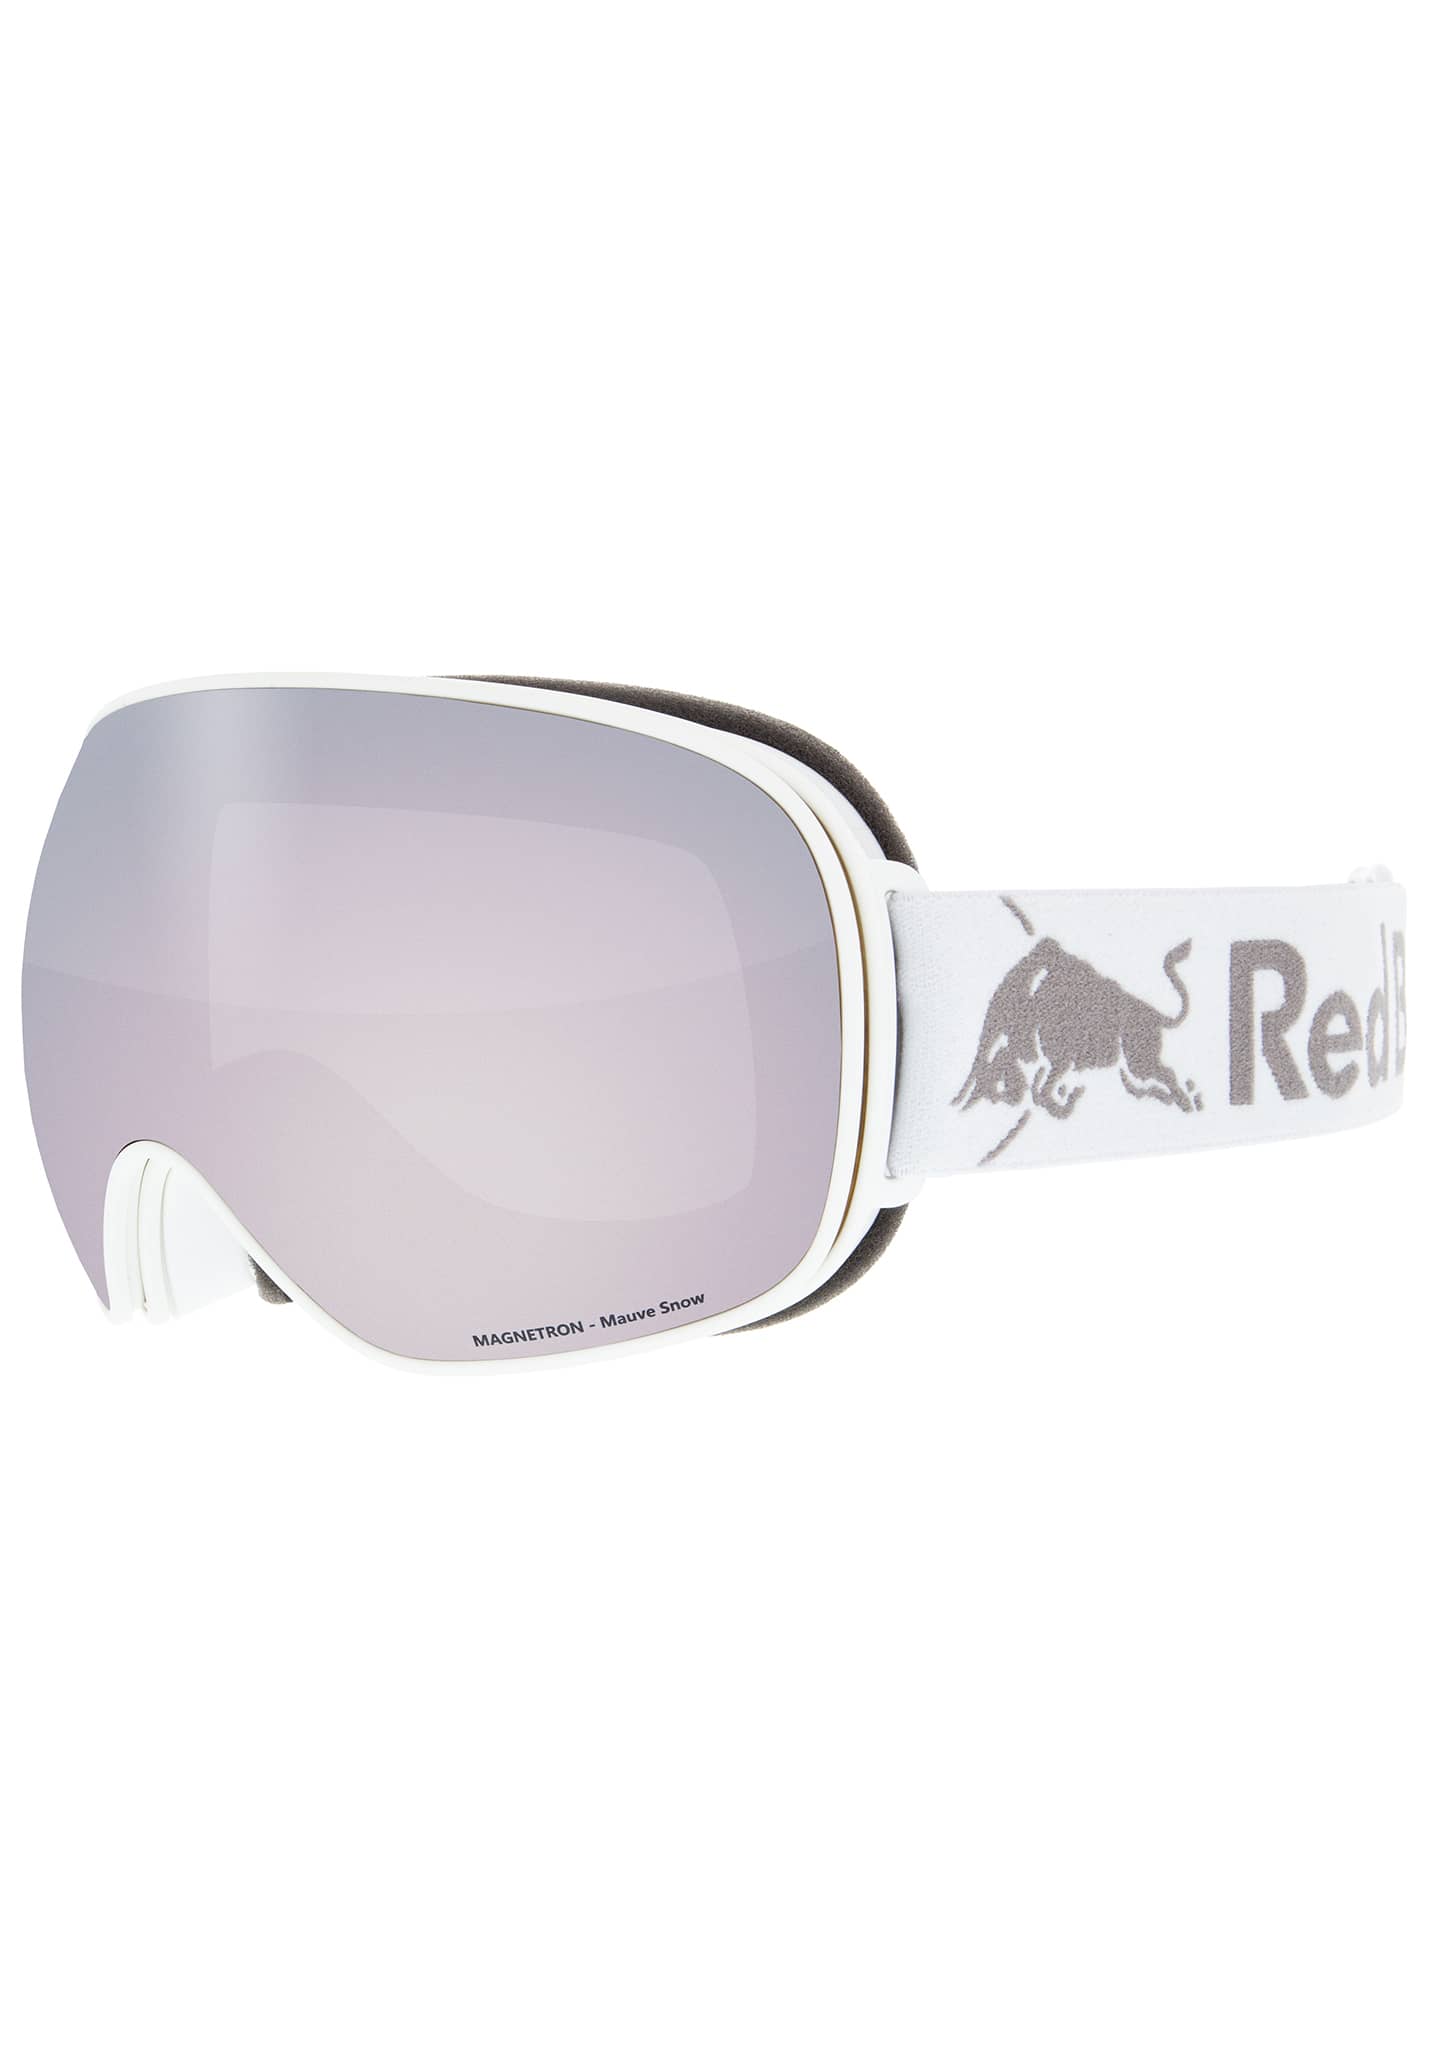 Red Bull SPECT Eyewear Magnetron Snowboardbrillen weiß/mauvefarbener schnee, rot mit silbernem blitz One Size